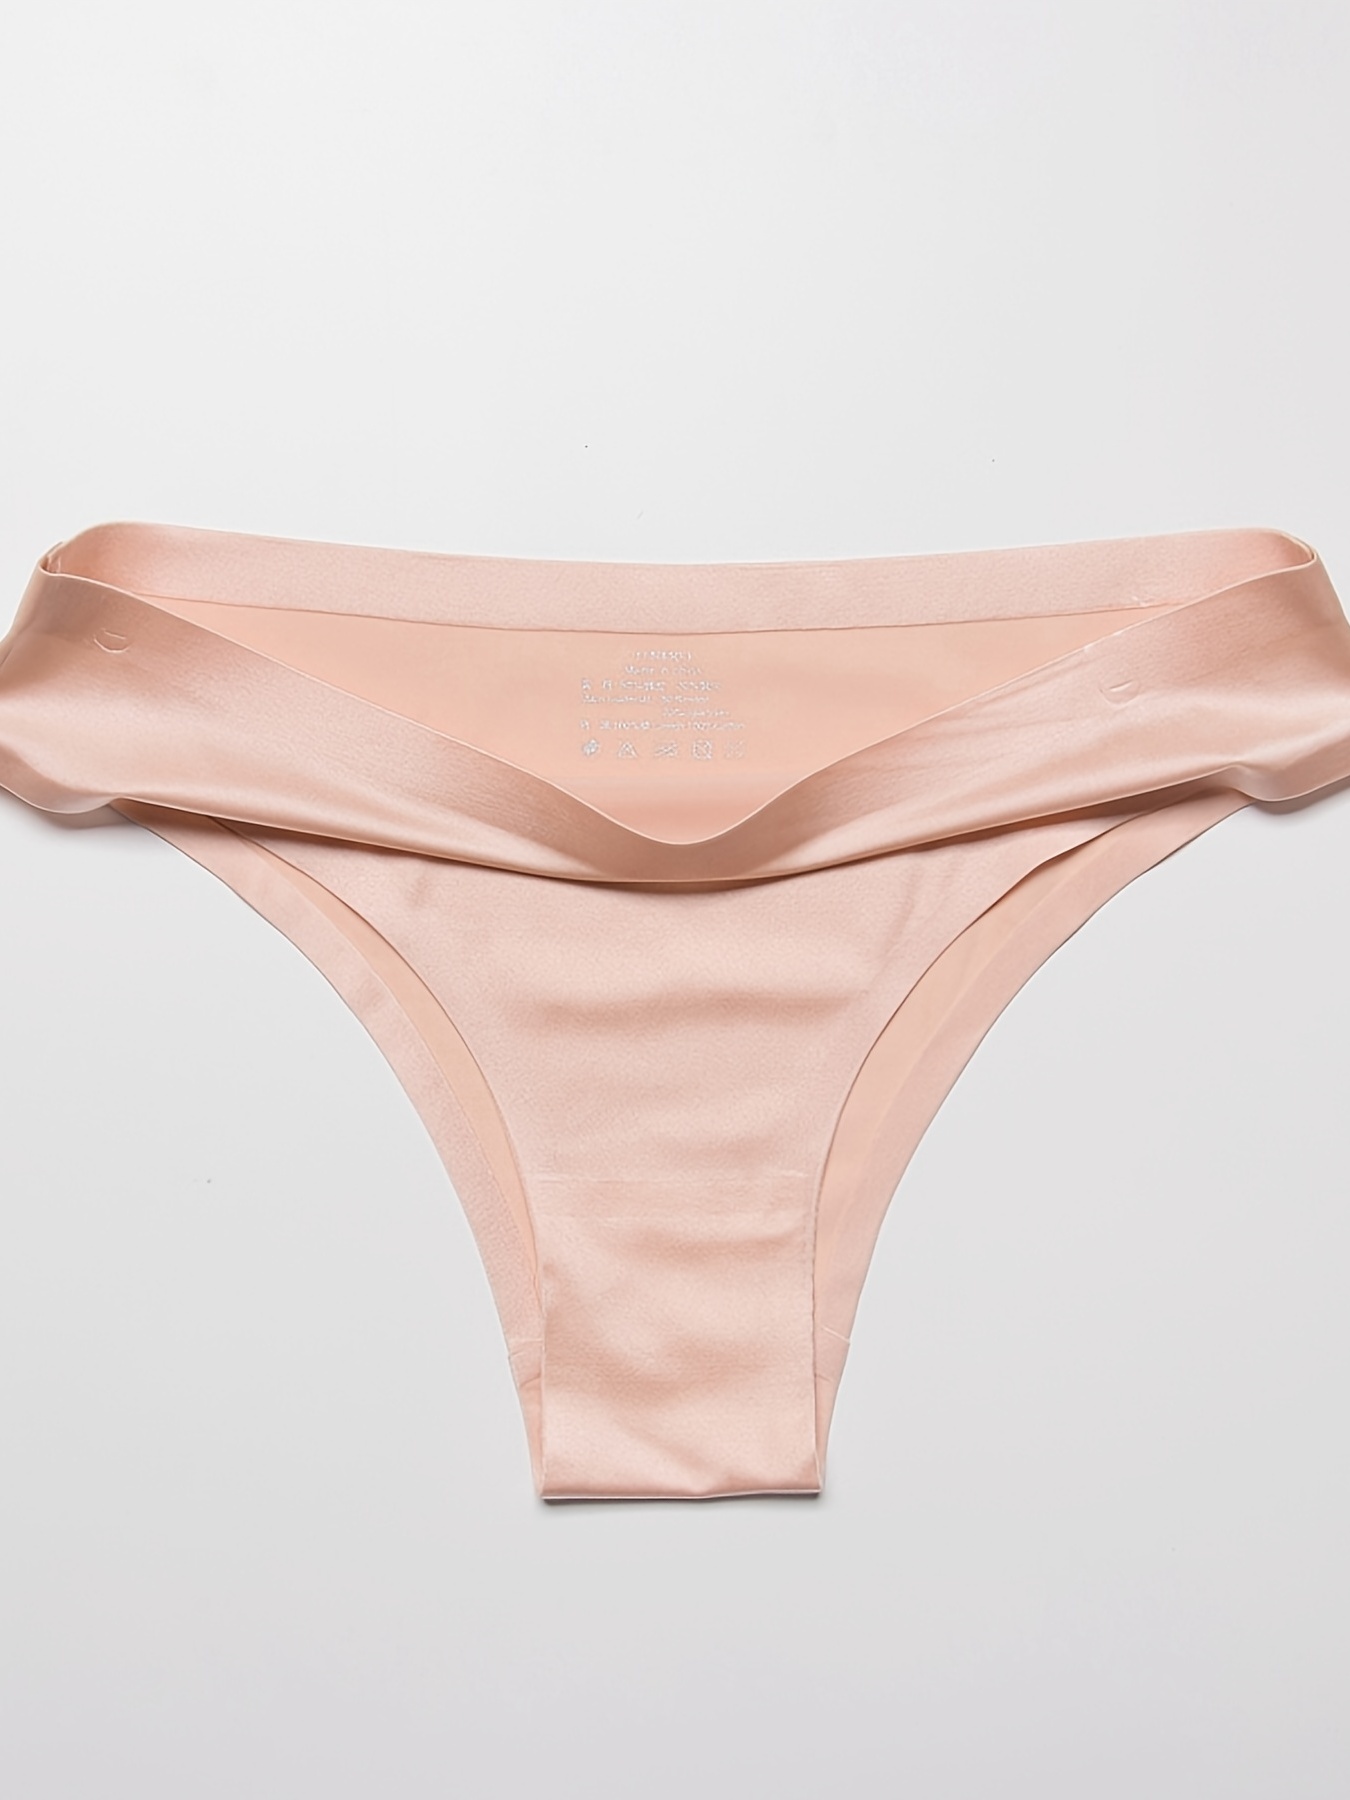 Sexy Tangas Seamless Panties G-string Thongs Underwear Women